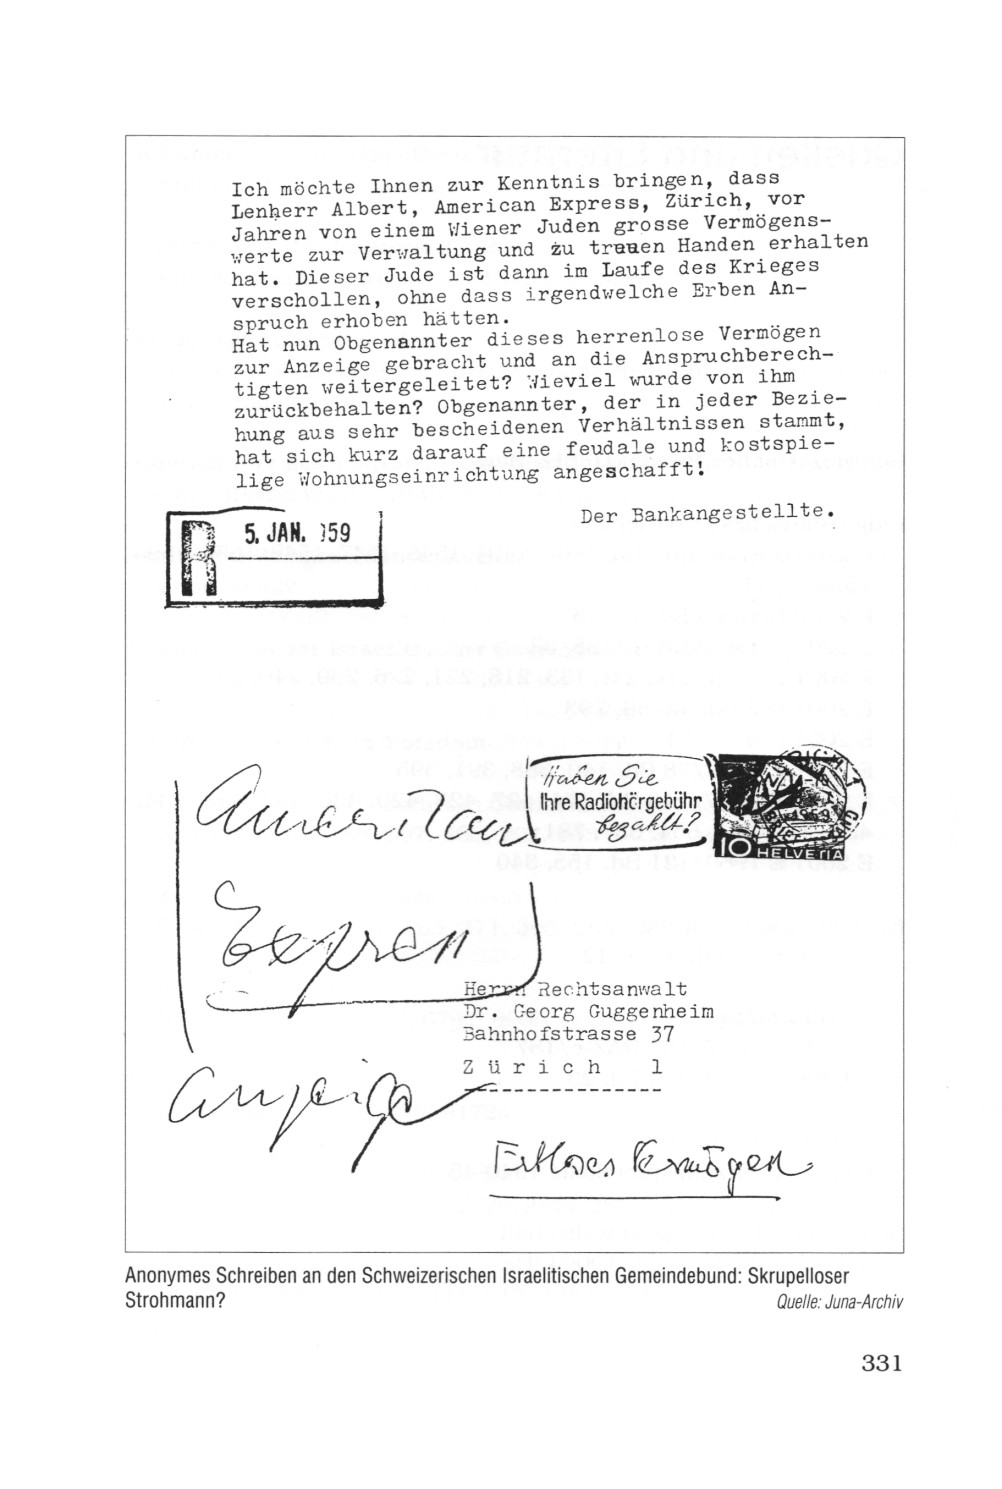 Seite 313: Anonymes Schreiben 1959 an den Israelitischen Gemeindebund in der Schweinz (Schweiz): Ein Albert Lenherr soll von einem Wiener Juden hohe Geldbetrge anvertraut bekommen haben und sich eine schne Wohnungseinrichtung gekauft haben